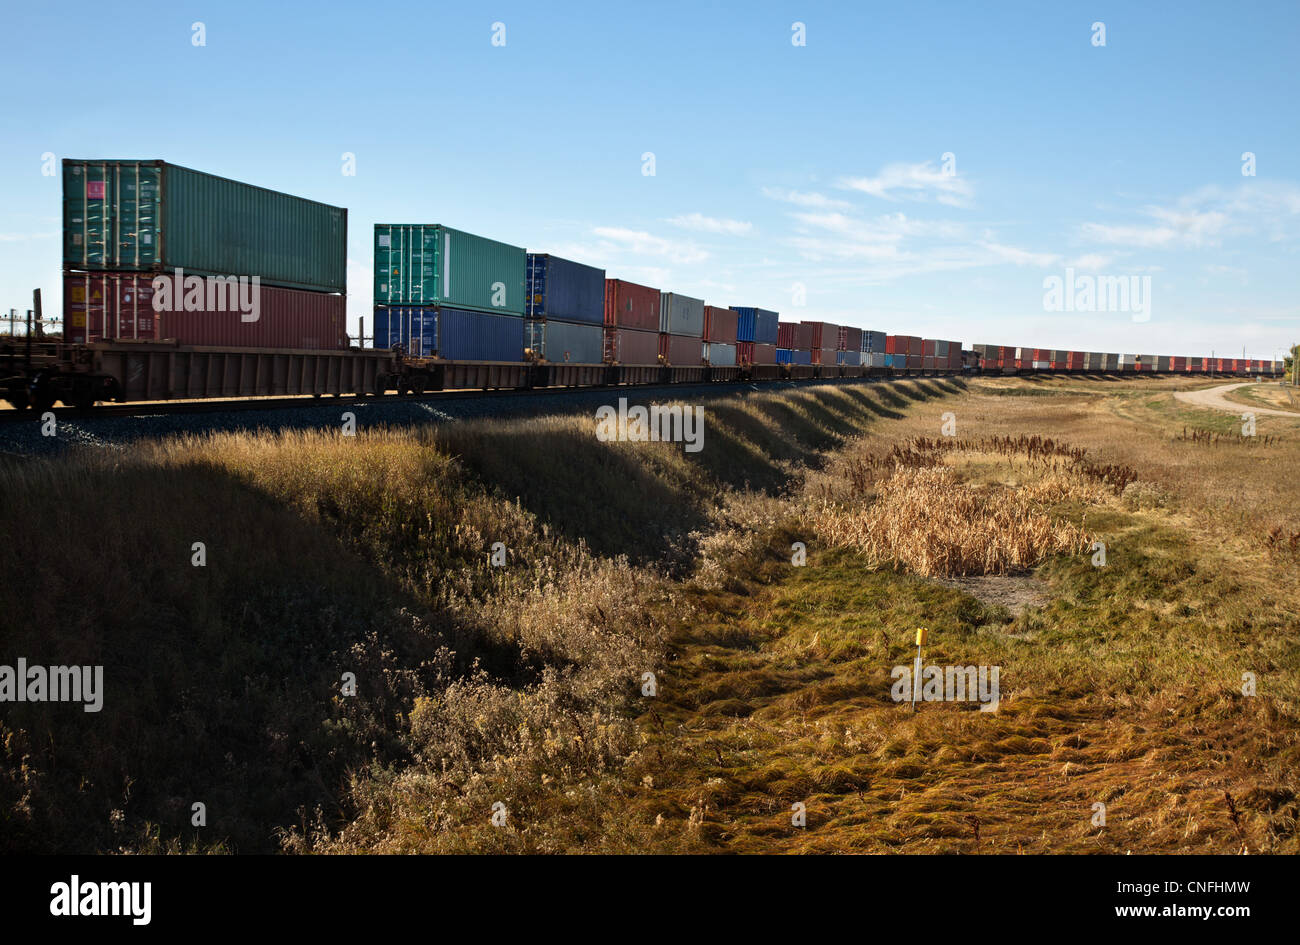 Freight train Stock Photo